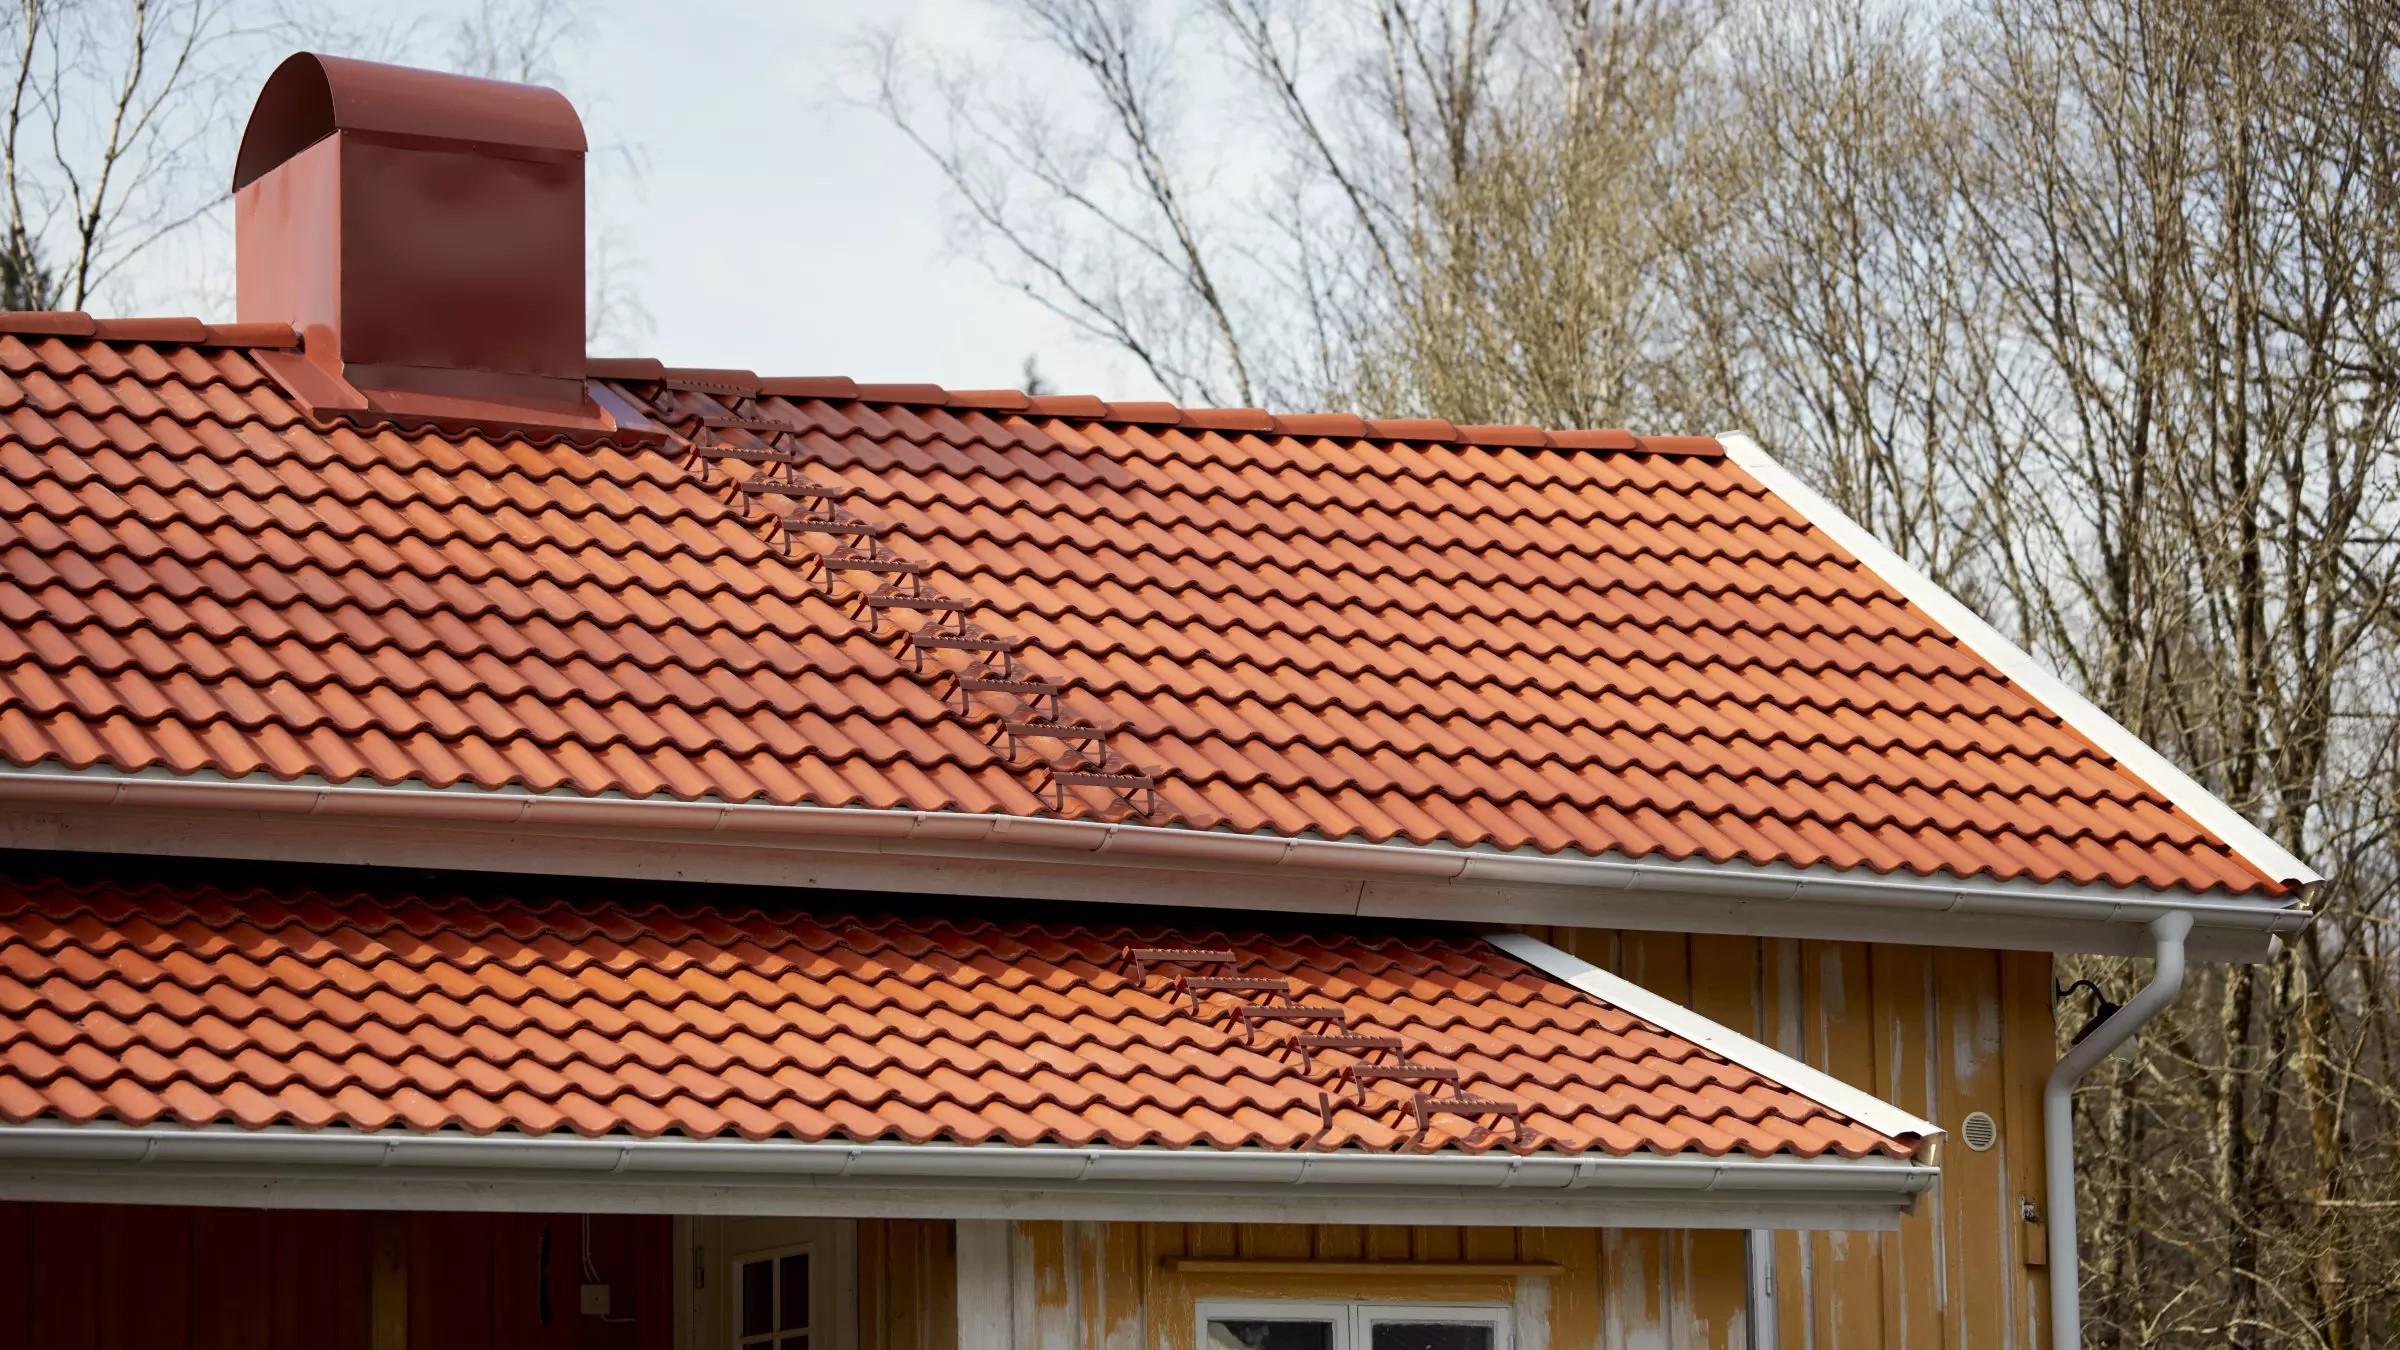 Ormaxin tehtaalla jokainen kattotiili läpivalaistaan laadun varmistamiseksi.